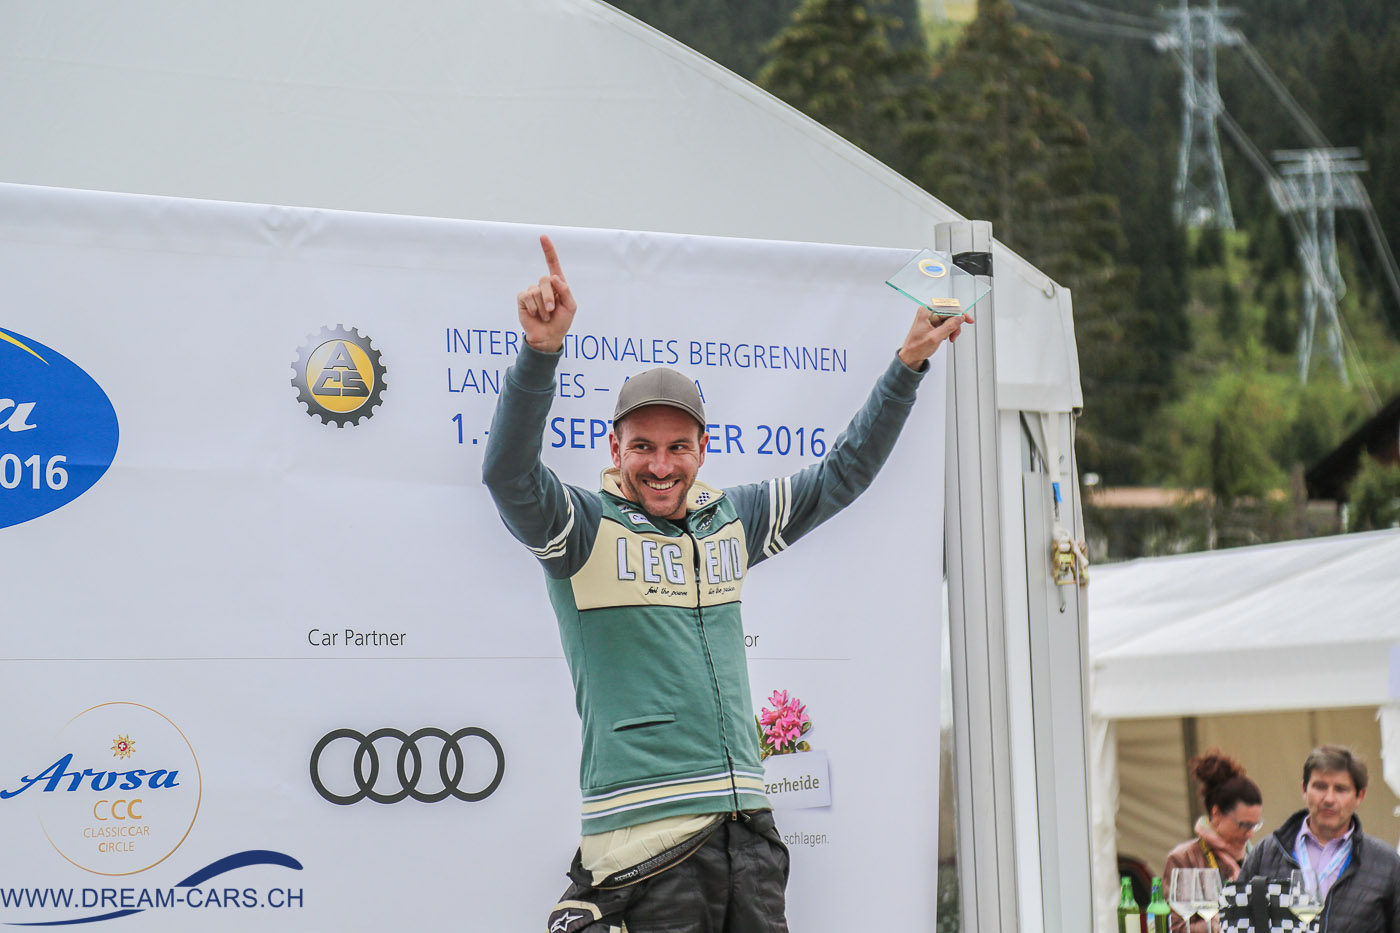 Arosa ClassicCar 2016 Thomas Amweg freut sich über seinen Sieg und den neuen Streckenrekord